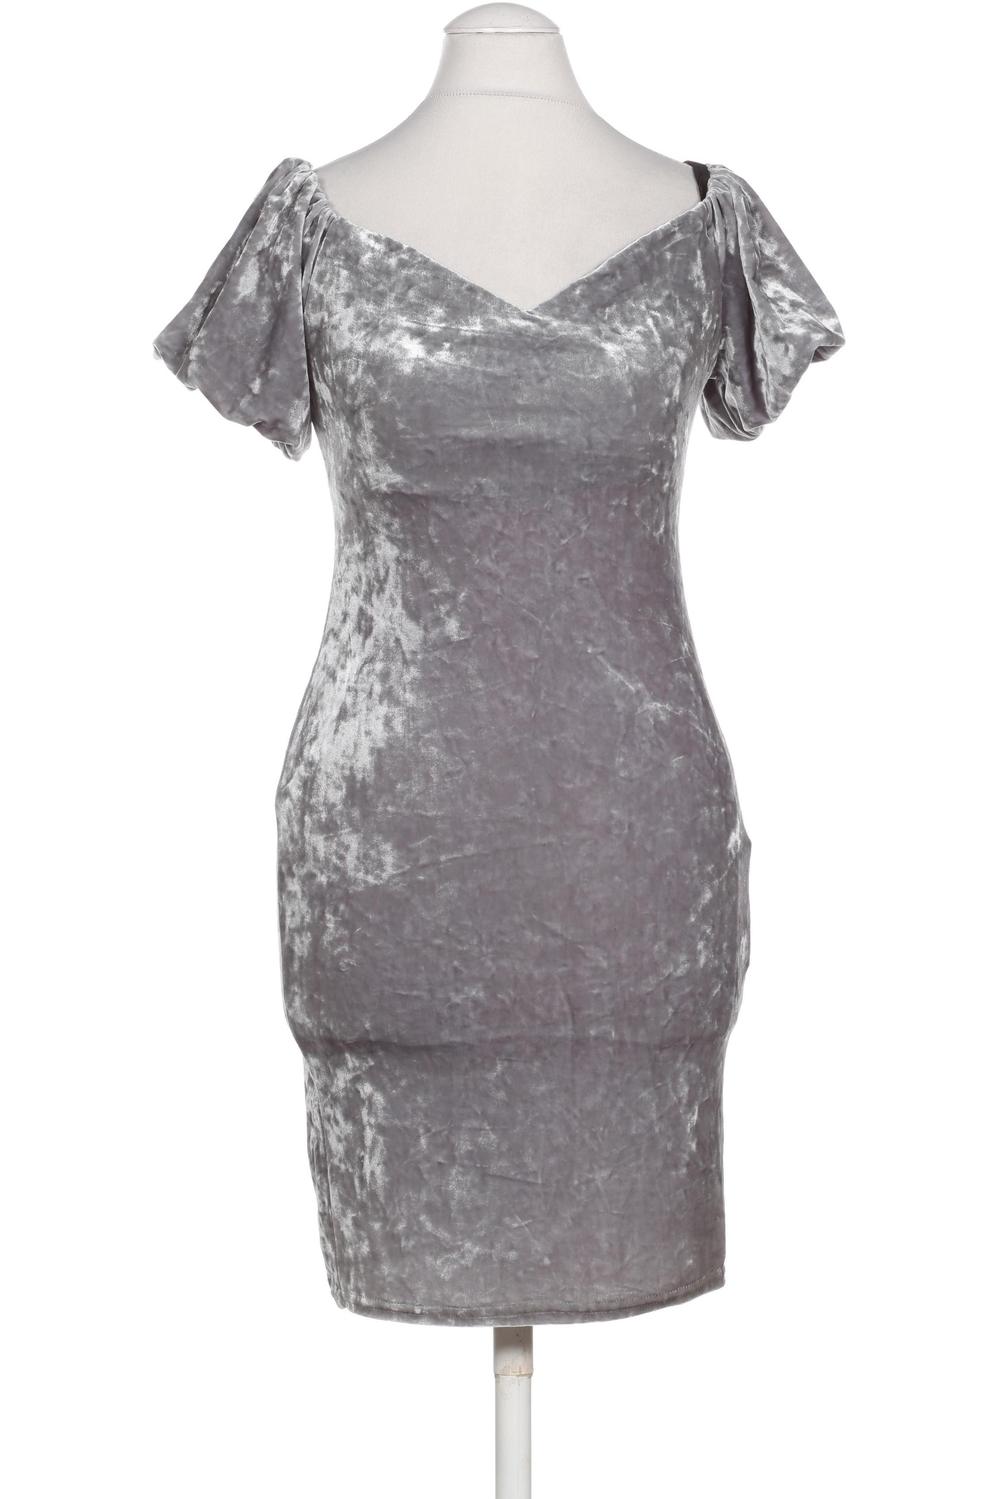 New Look Damen Kleid UK 10 Second Hand kaufen | ubup